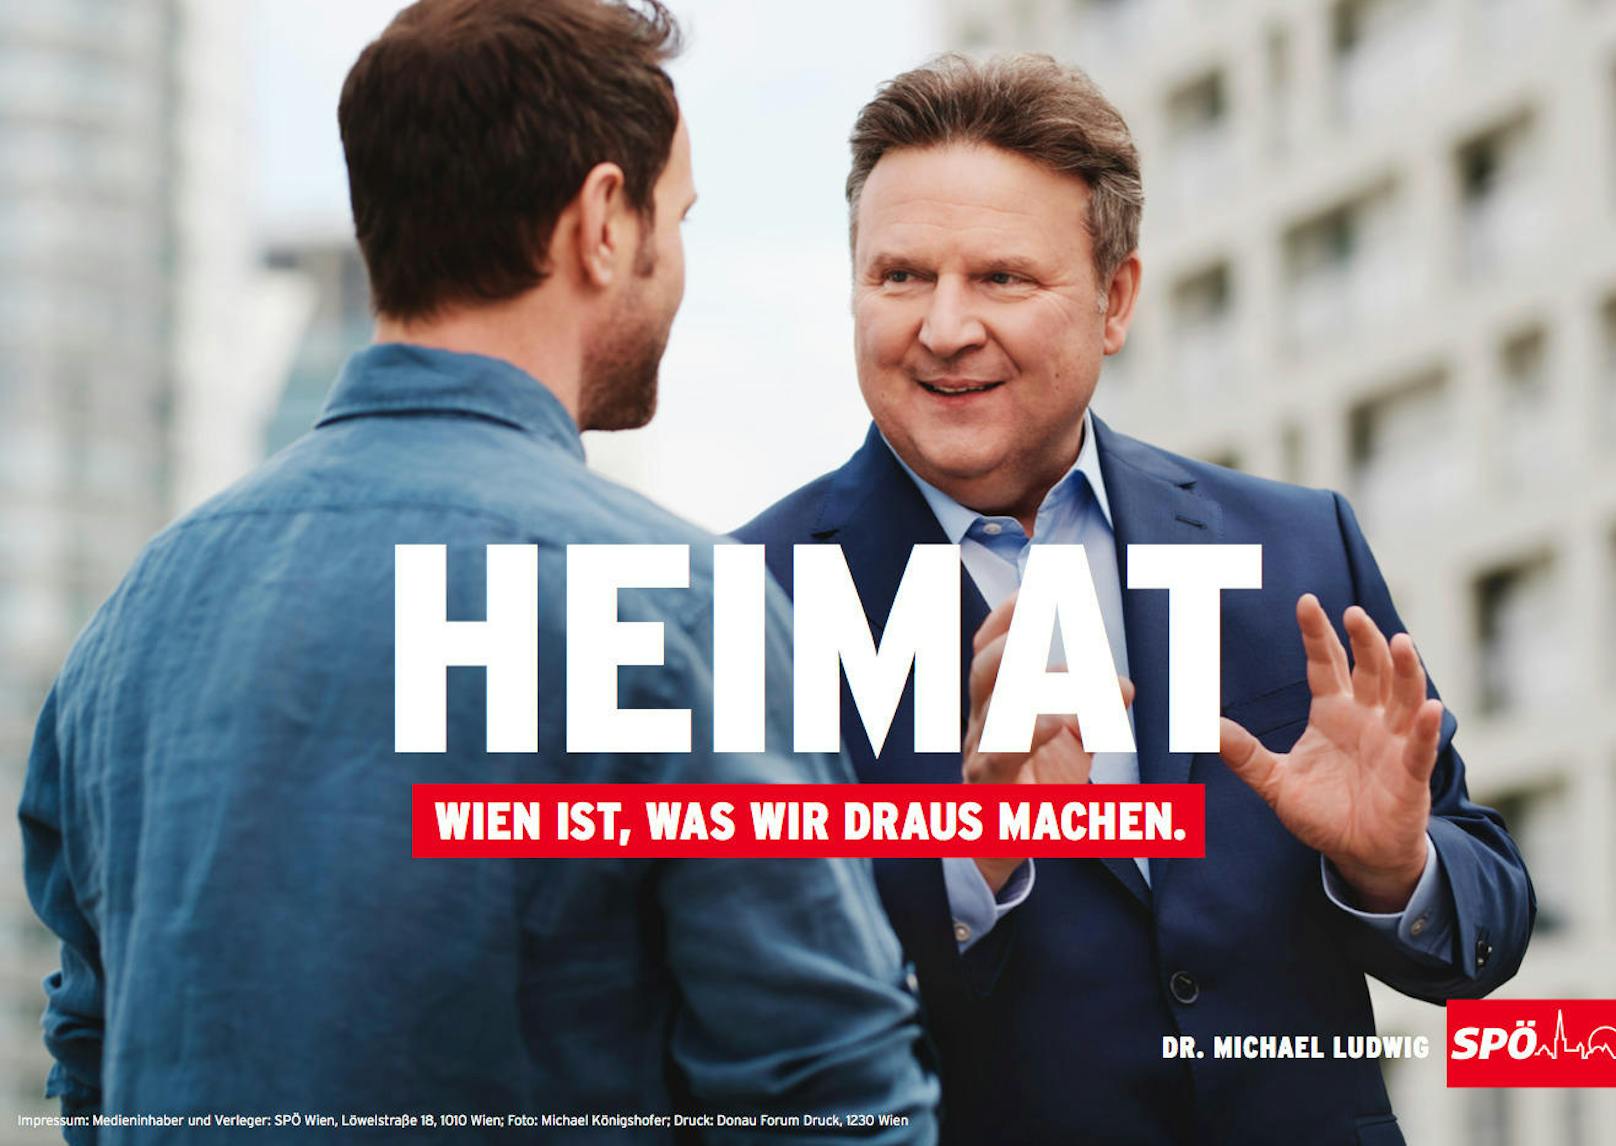 Ein drittes Thema: "Heimat". Hintergrund: In Wien leben 1,9 Millionen Menschen. Für Michael Ludwig ist Heimat "dort, wo man sich nicht erklären muss".